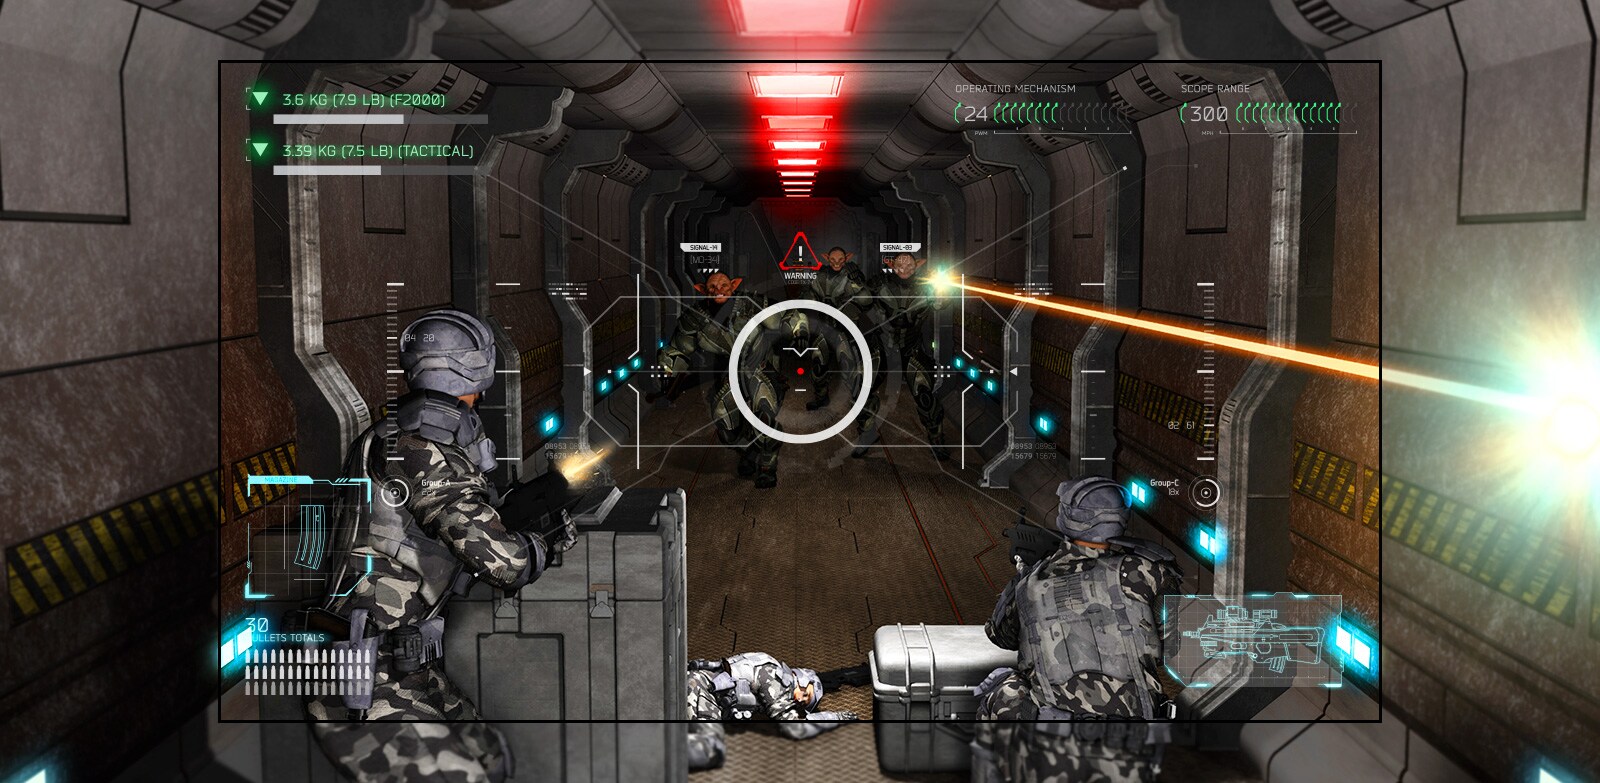 Televizorā redzama aina no šaušanas spēles, kurā spēlētājam uzbrūk citplanētieši ar ieročiem.